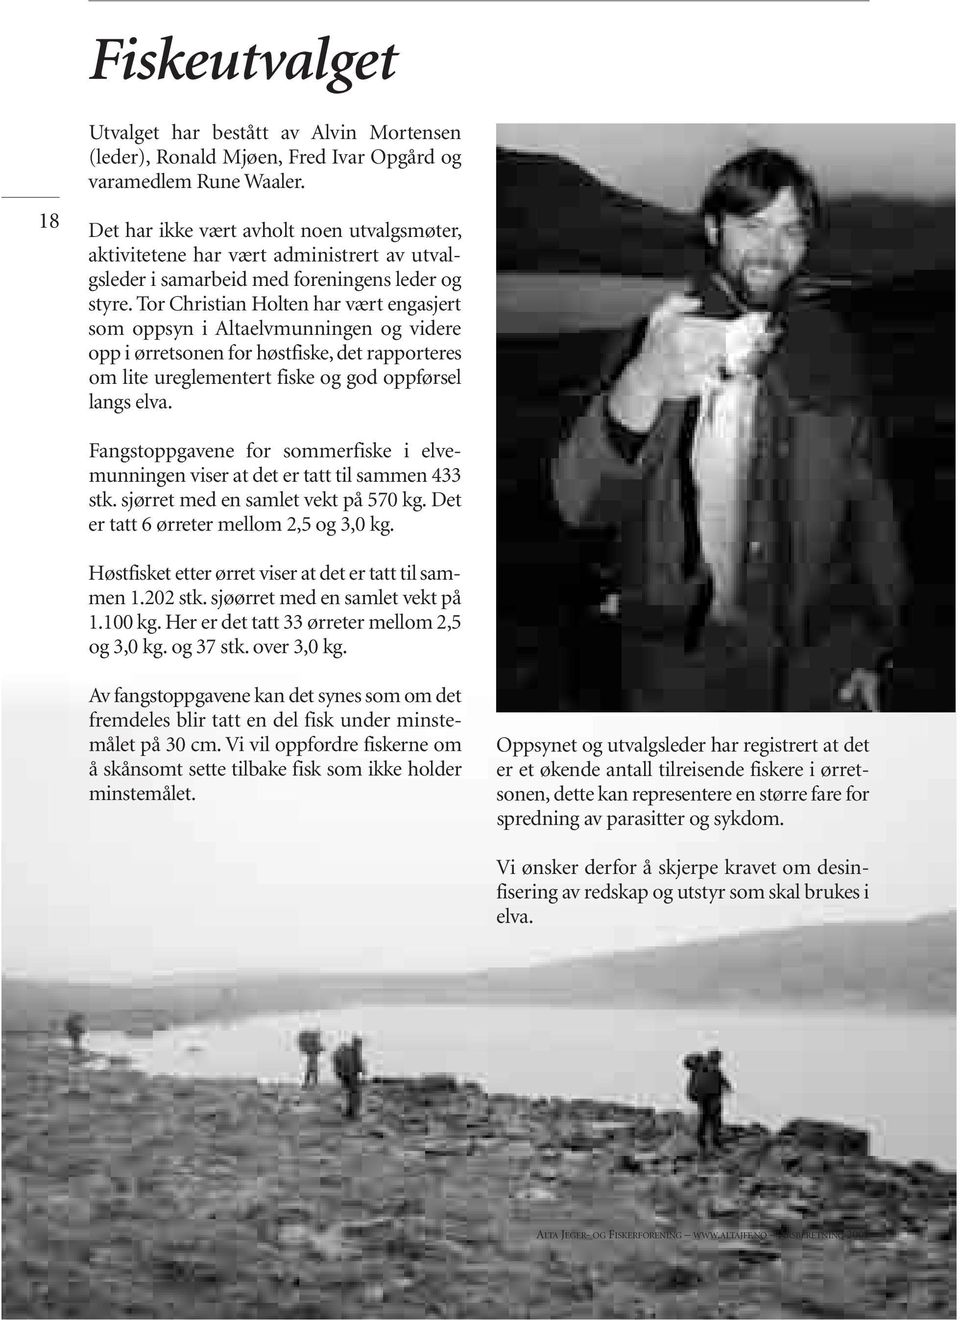 Tor Christian Holten har vært engasjert som oppsyn i Altaelvmunningen og videre opp i ørretsonen for høstfiske, det rapporteres om lite ureglementert fiske og god oppførsel langs elva.